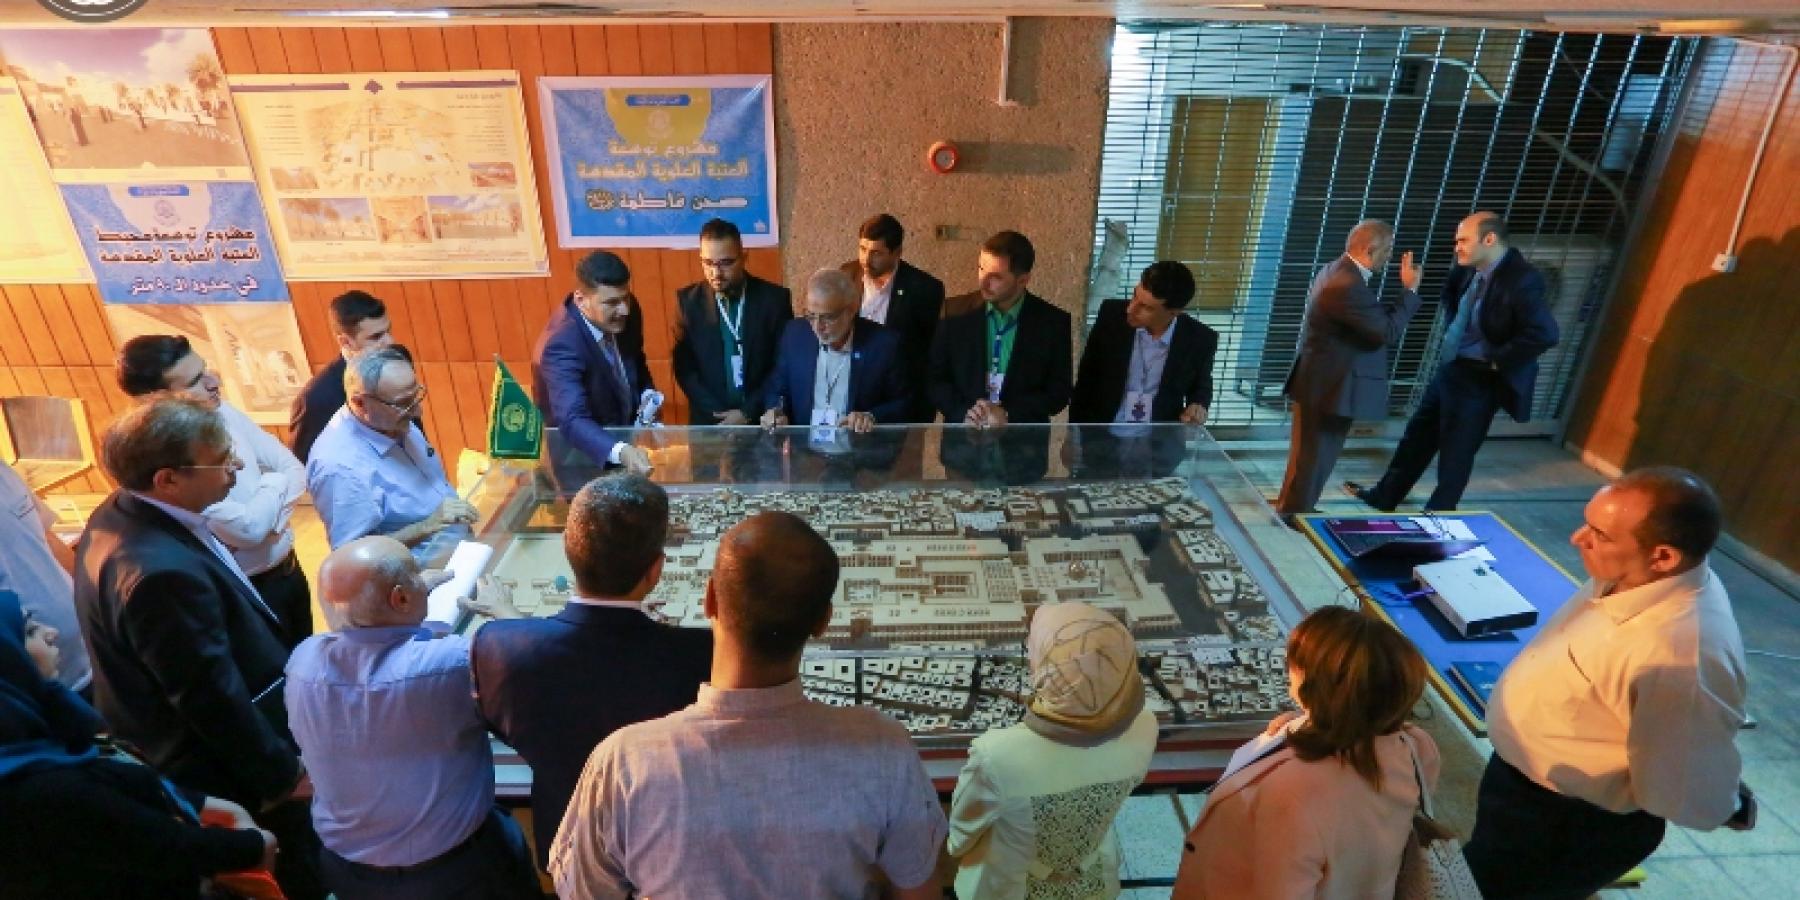 مشاركة فاعلة للعتبة العلوية المقدسة في معرض التخطيط الحضري والإقليمي بجامعة بغداد